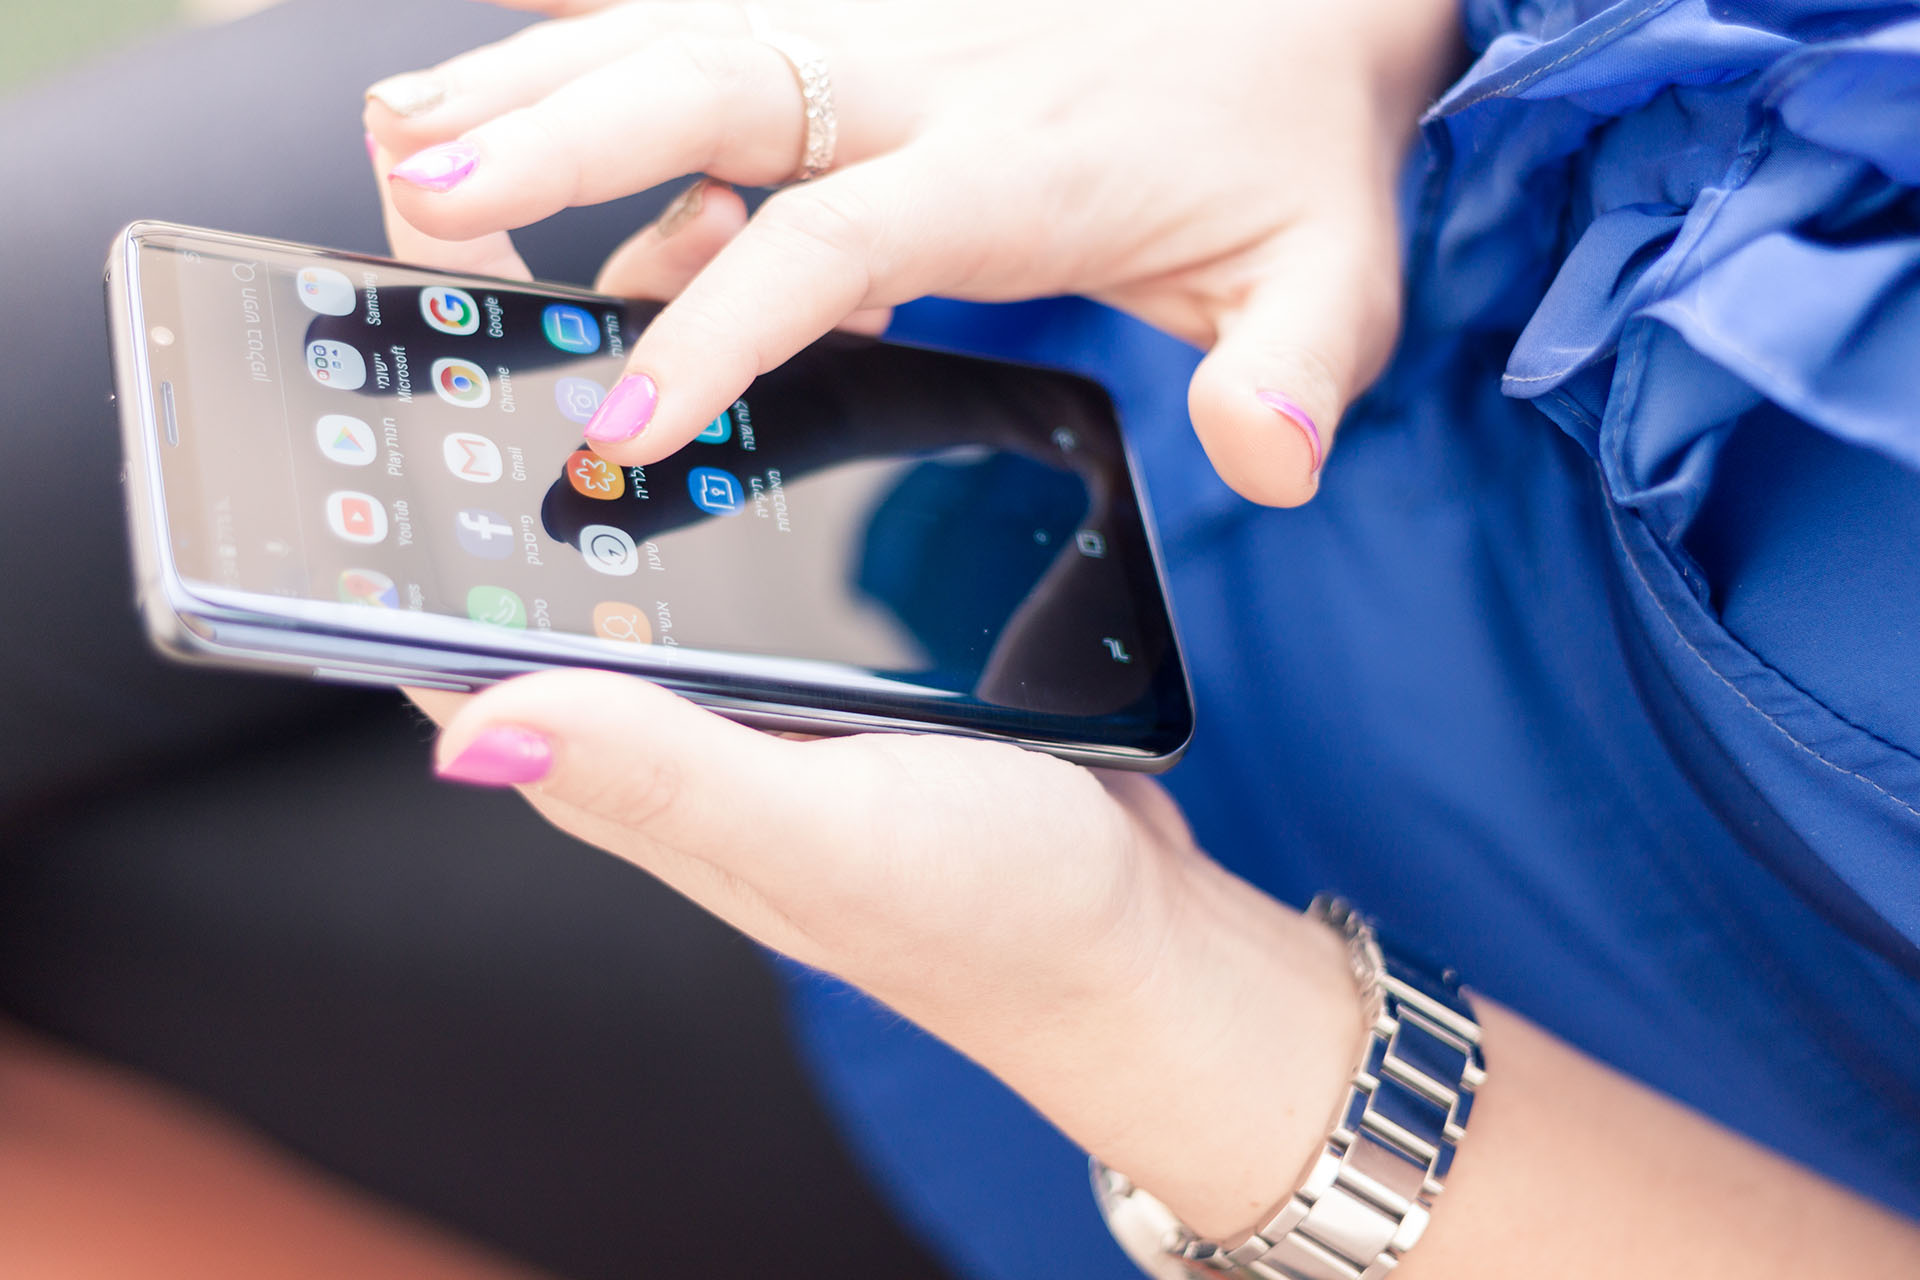 סמסונג מתחילה בהפצת אנדרואיד 9.0 לסדרת Galaxy S9